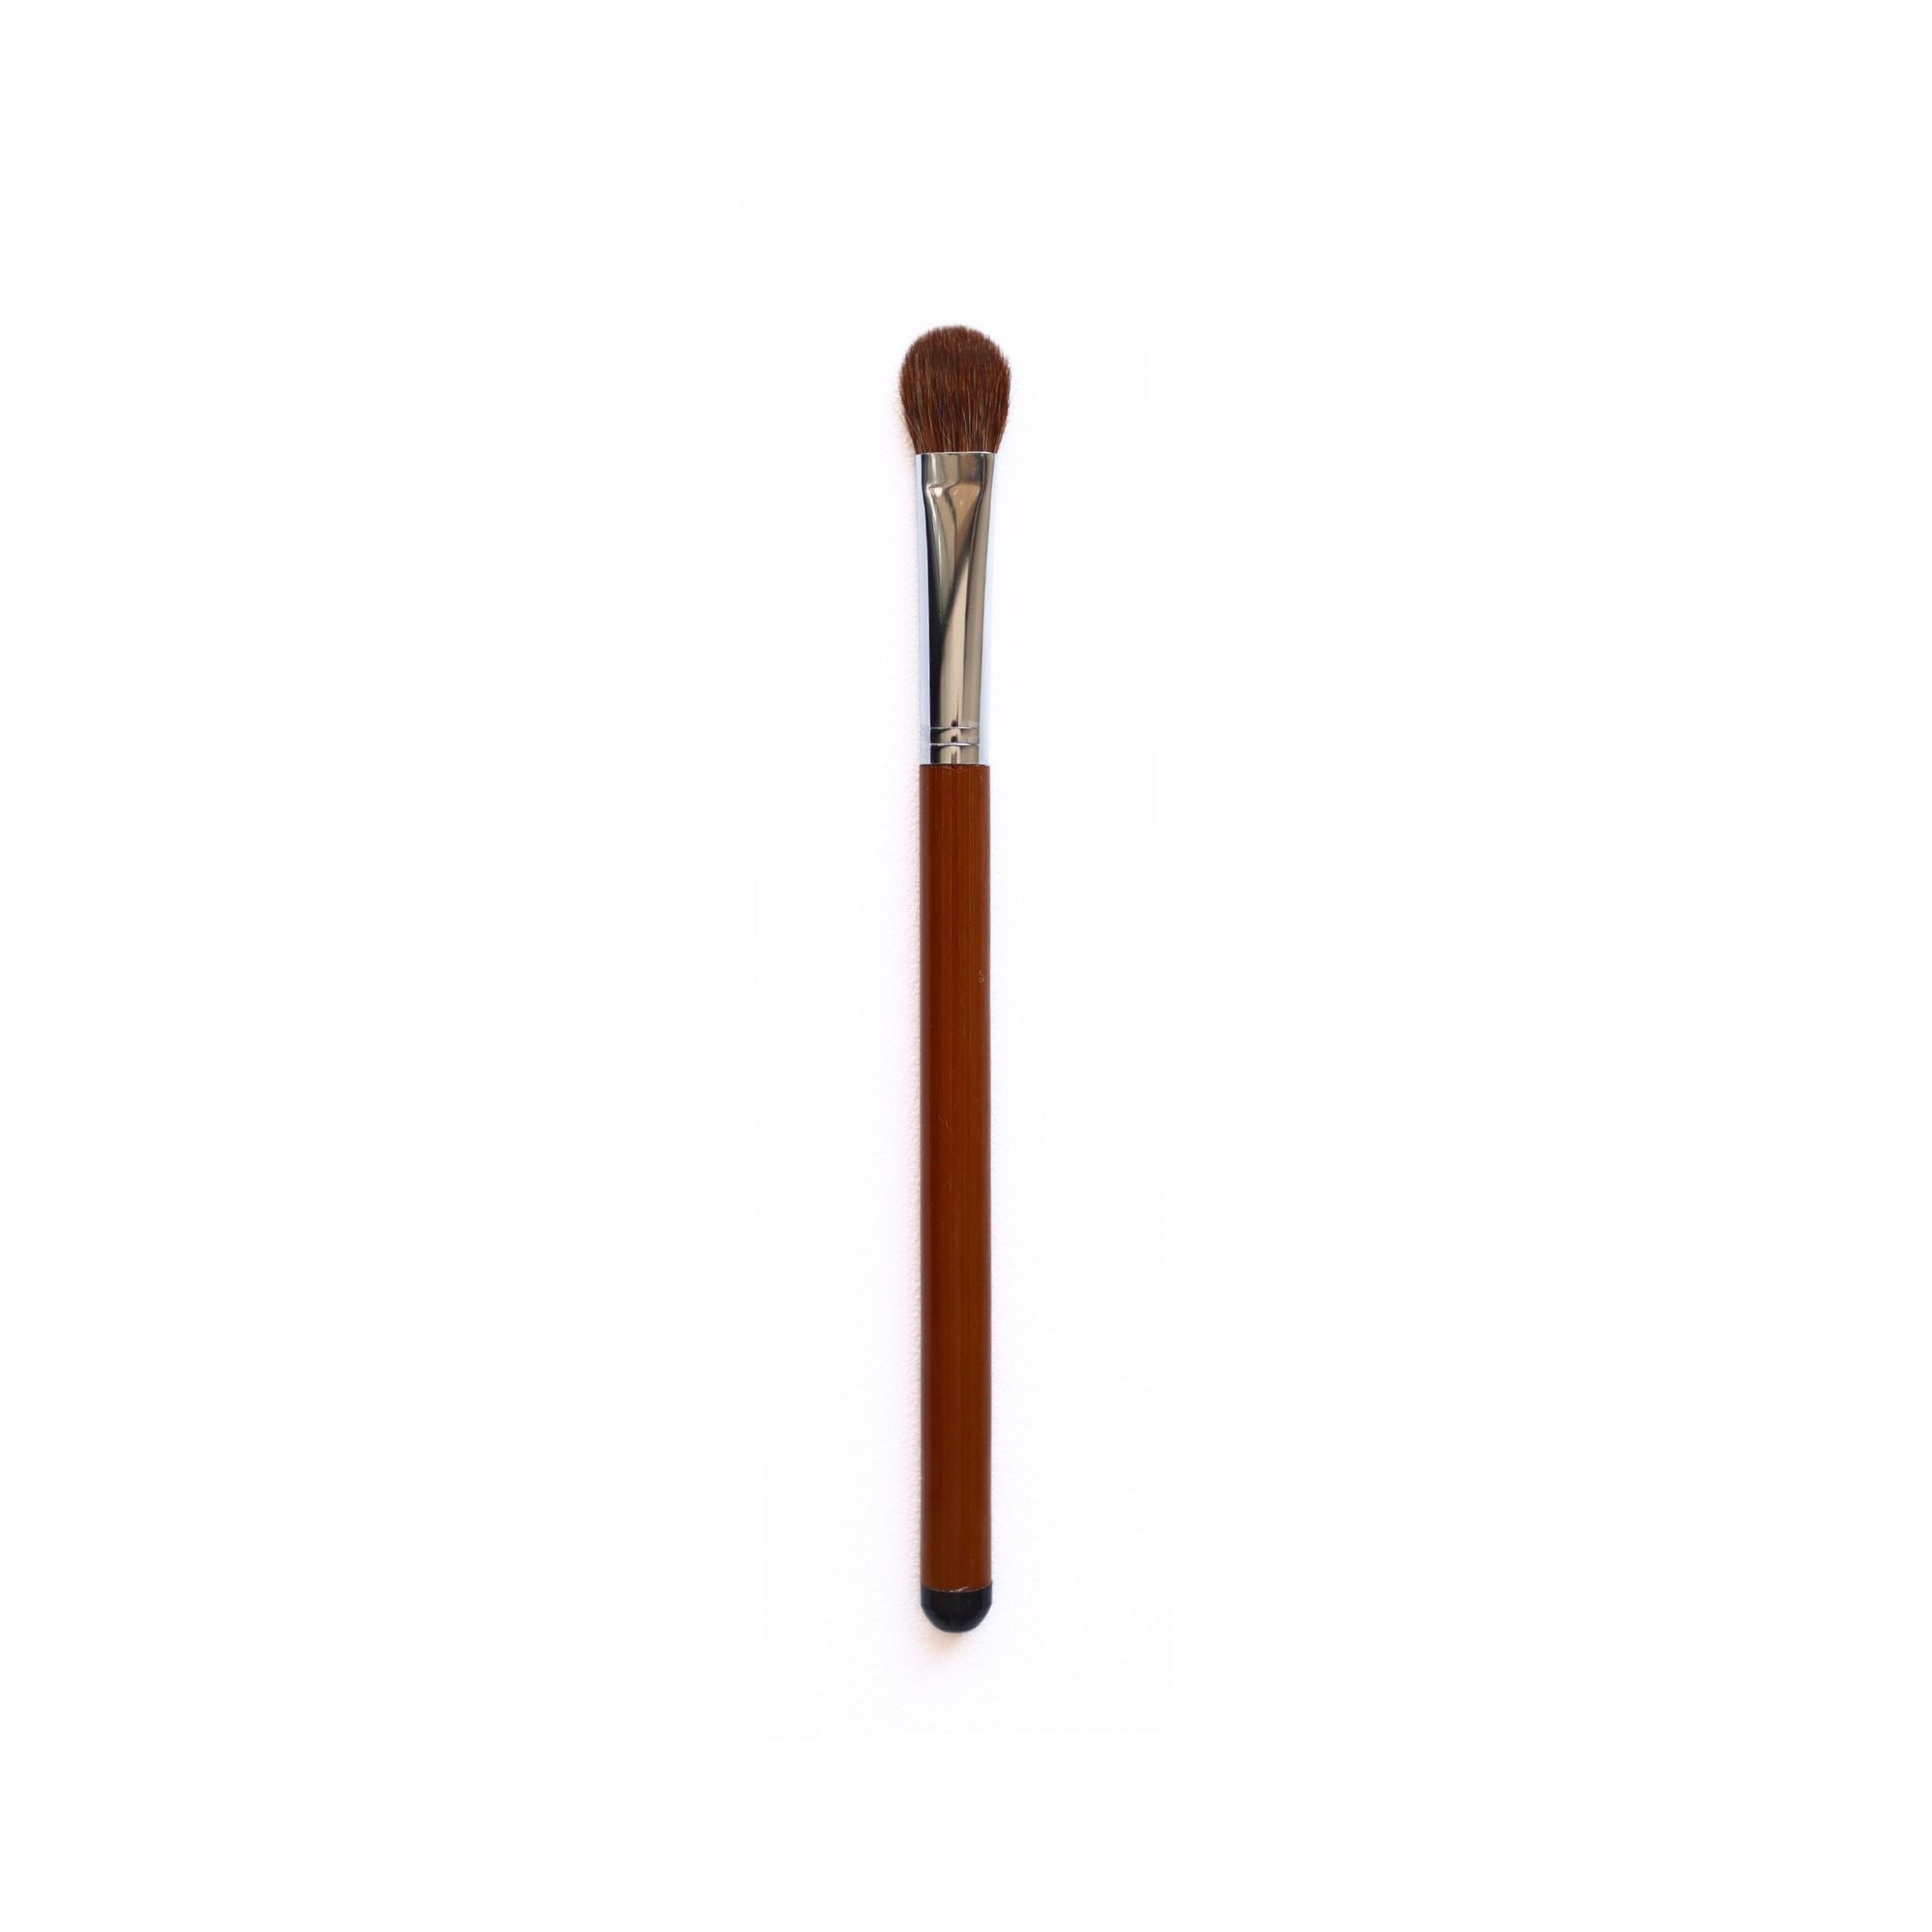 Tanseido Eyeshadow Brush, Take 竹 'Bamboo' Series (AQ12TAKE) - Fude Beauty, Japanese Makeup Brushes